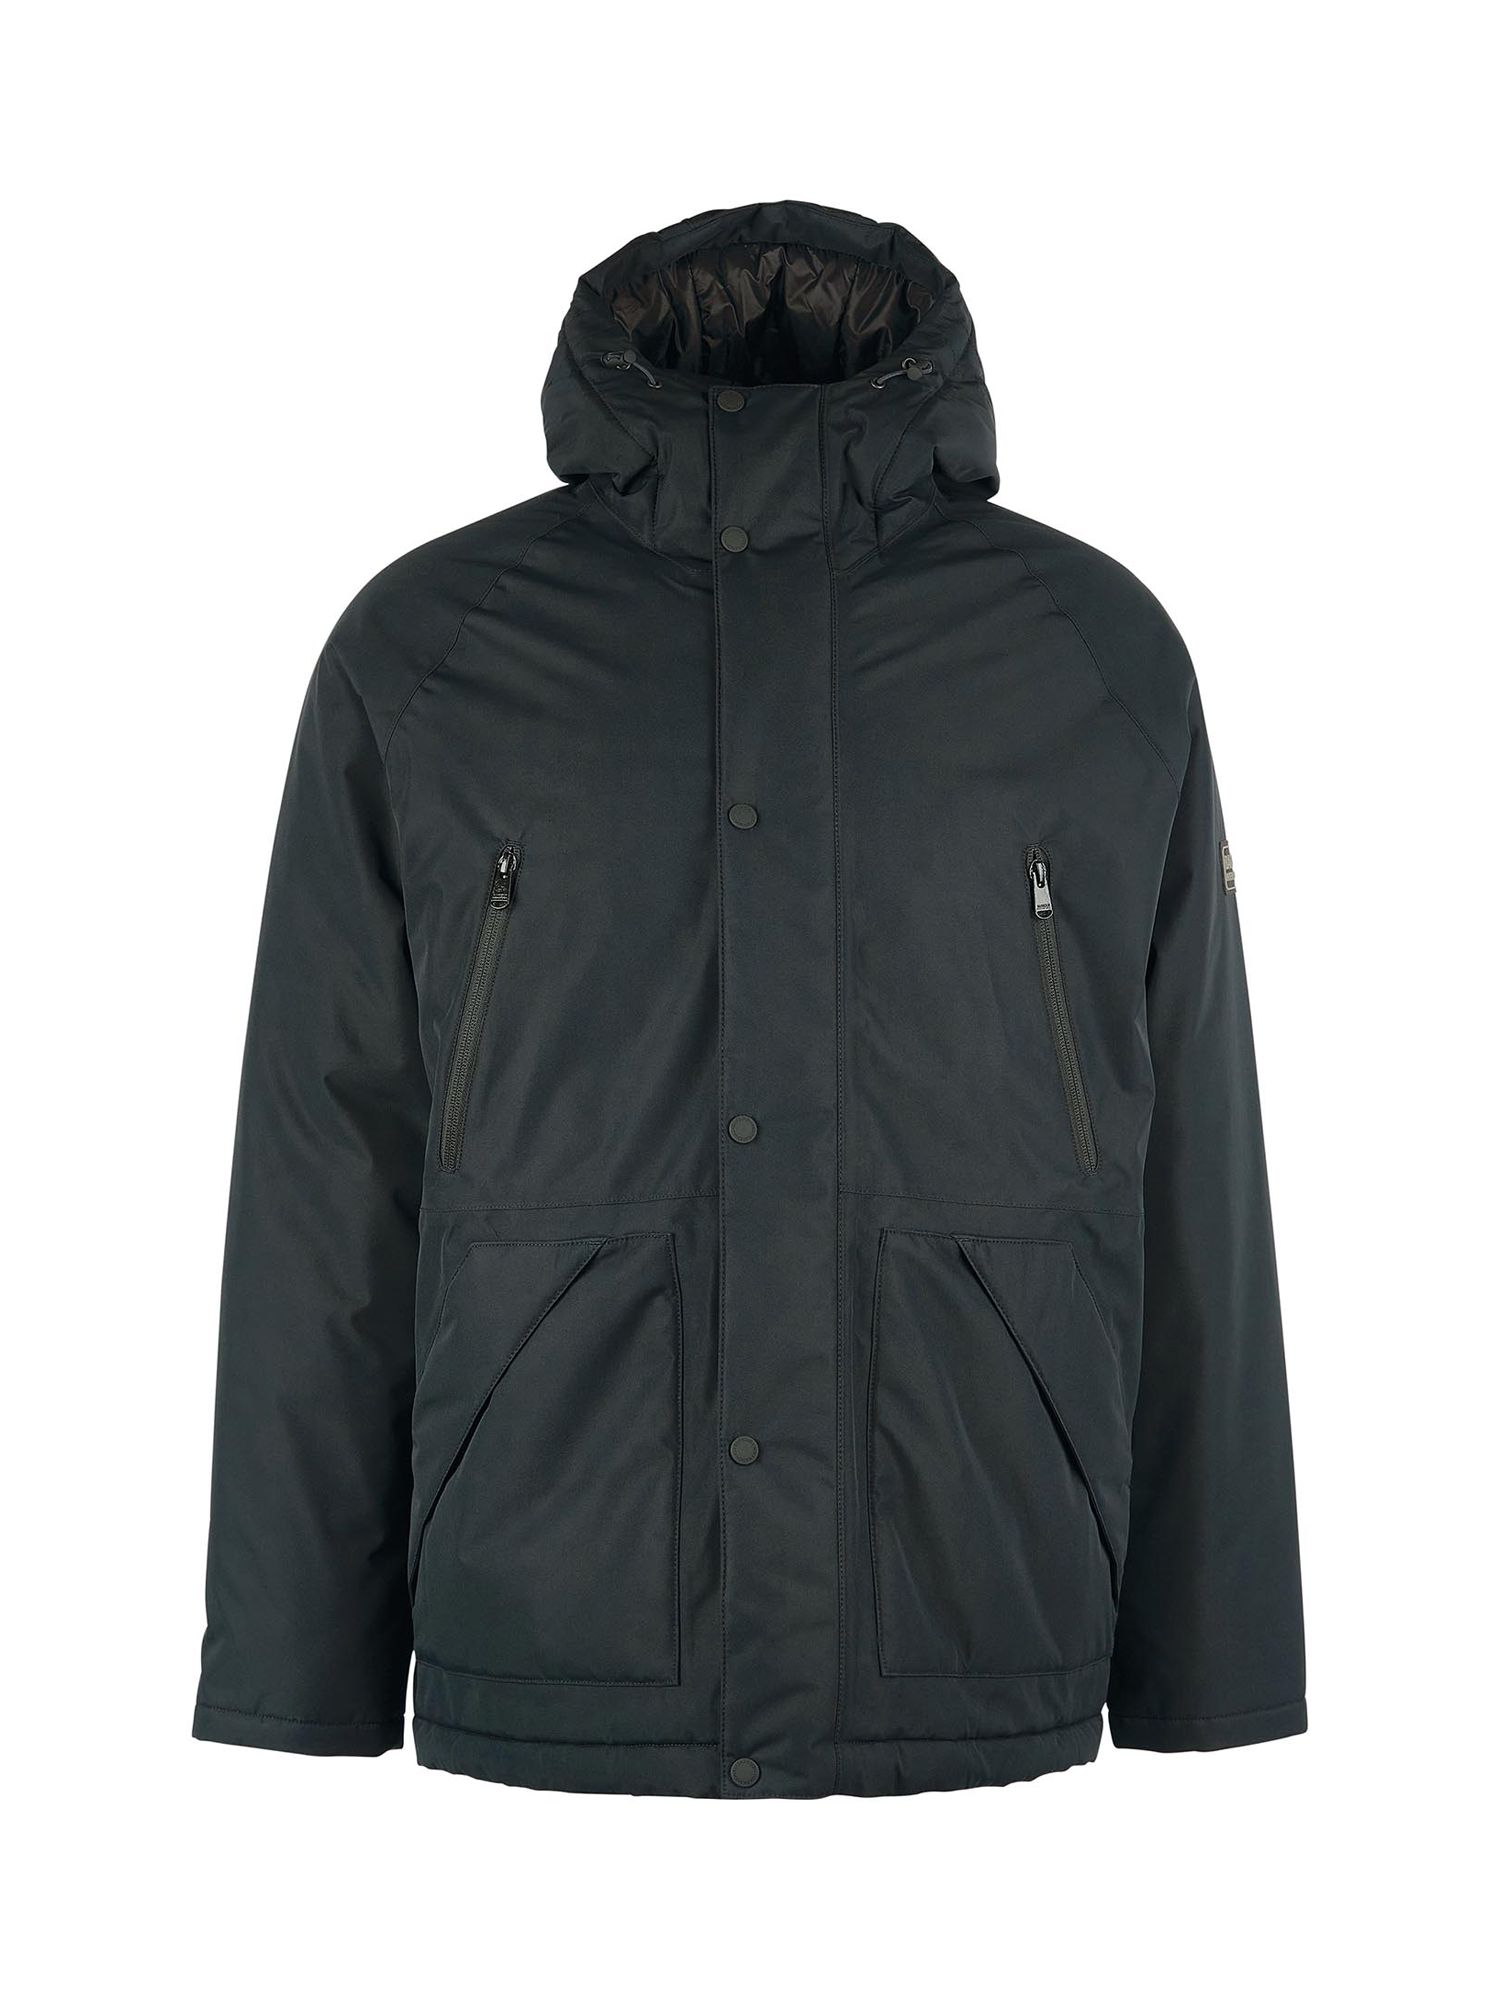 Barbour International Fleat Waterproof Jacket, Black